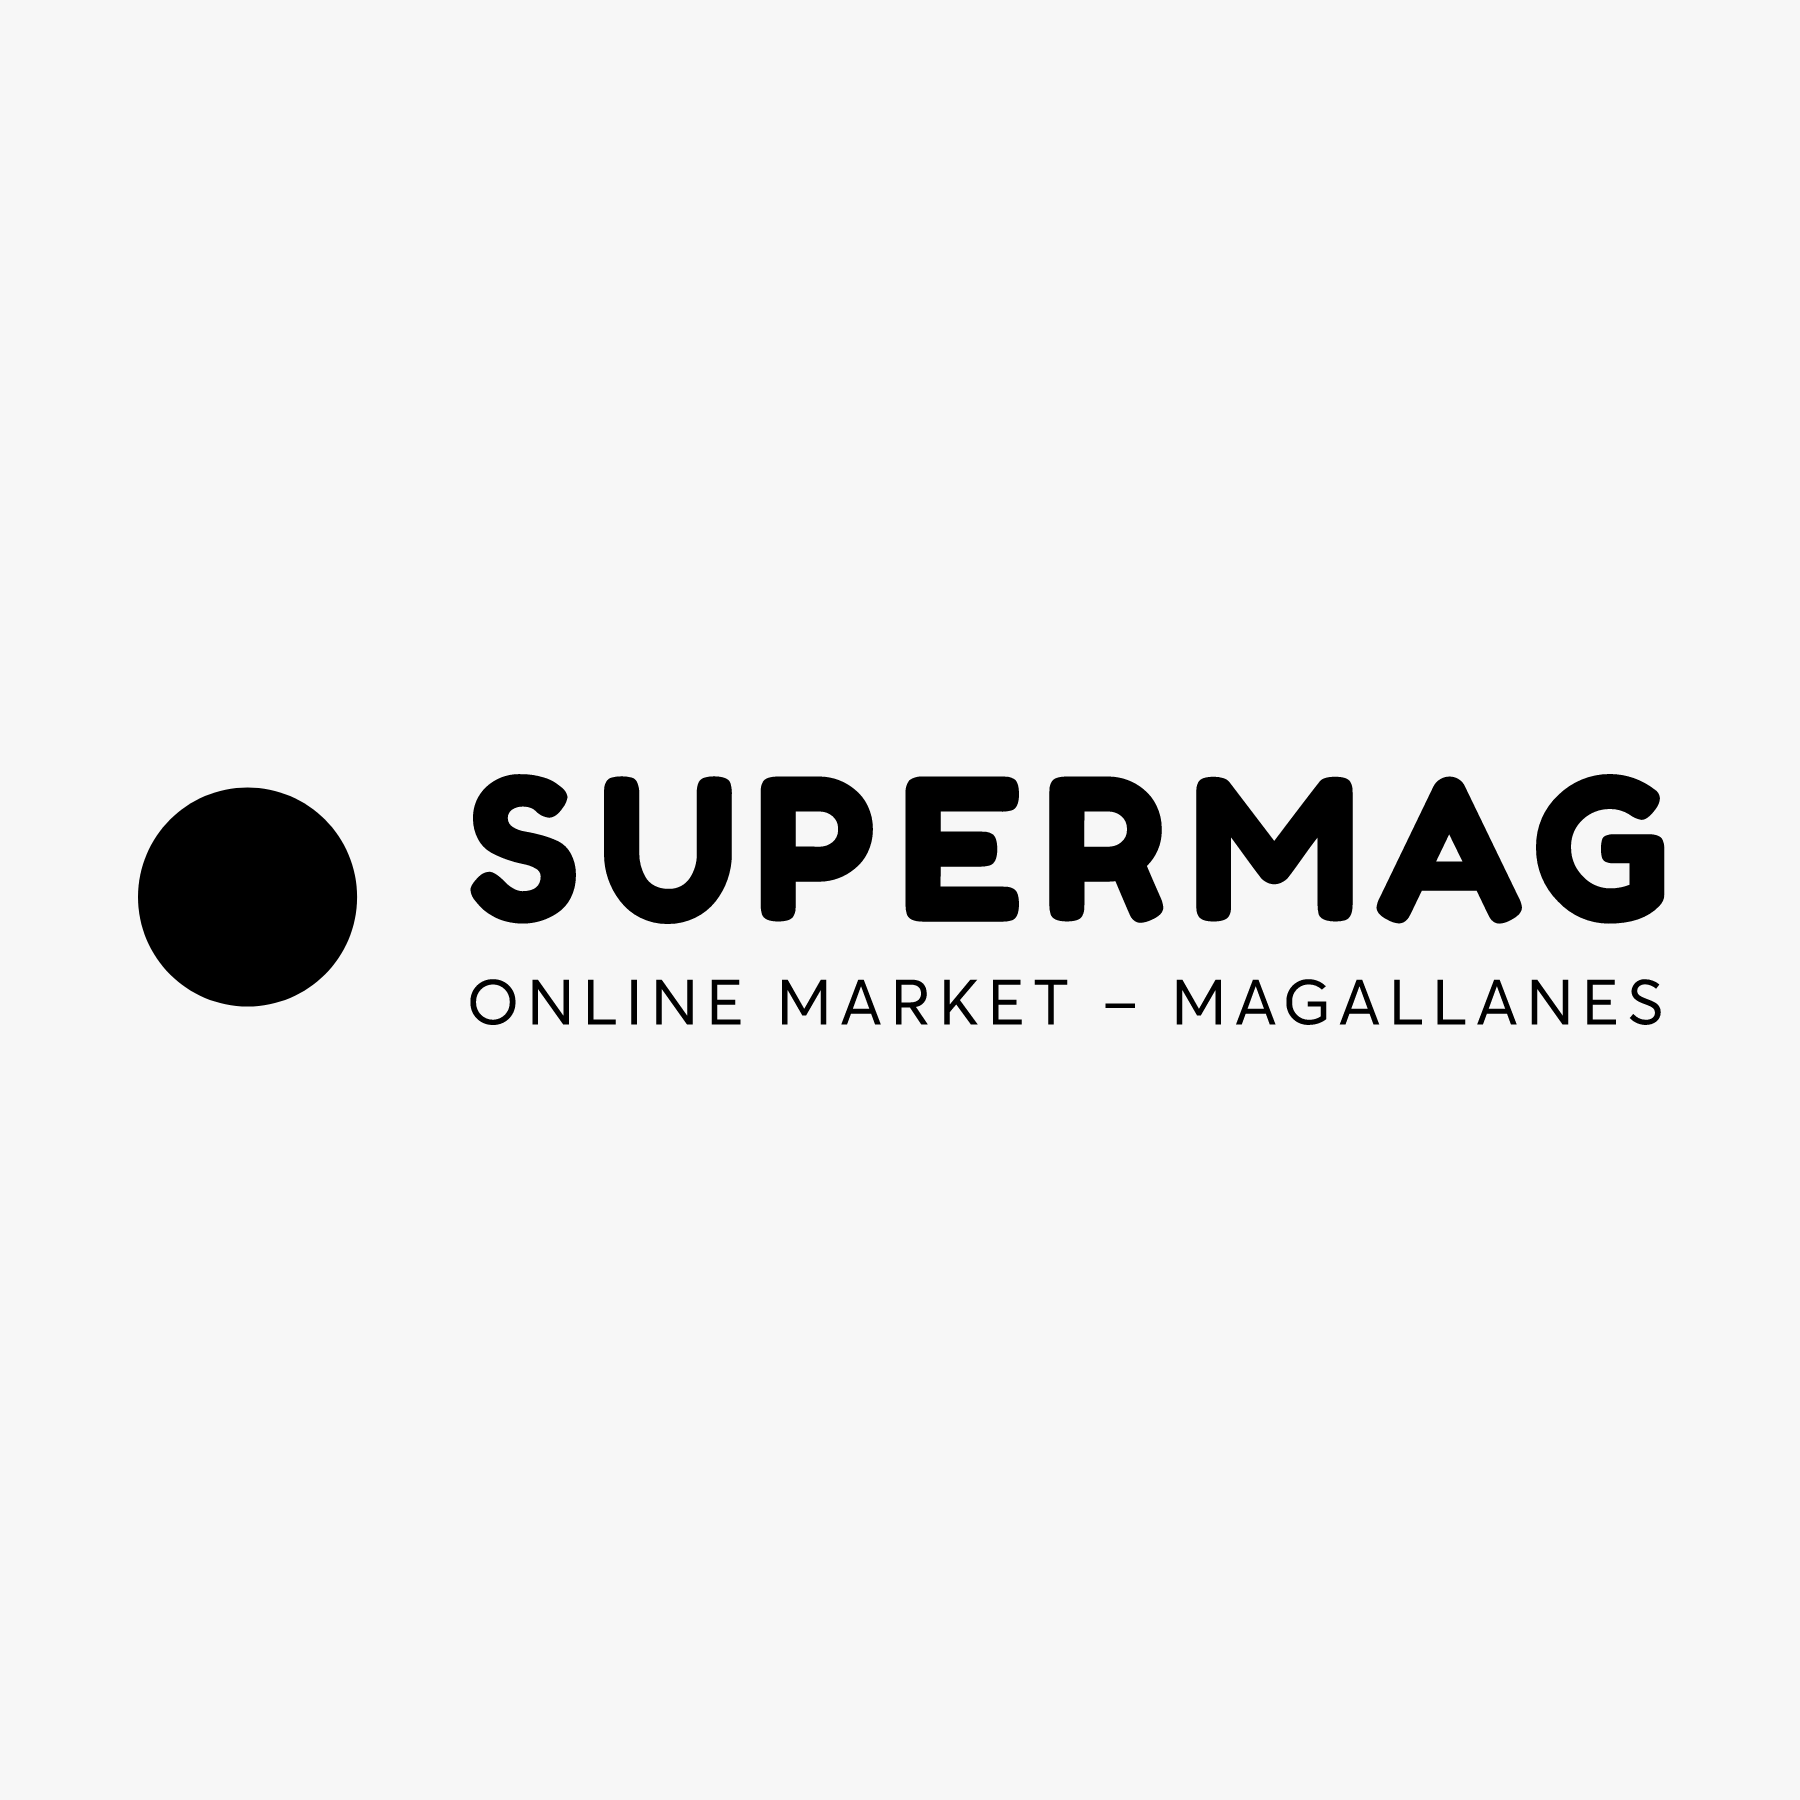 Supermag Market Magallanes